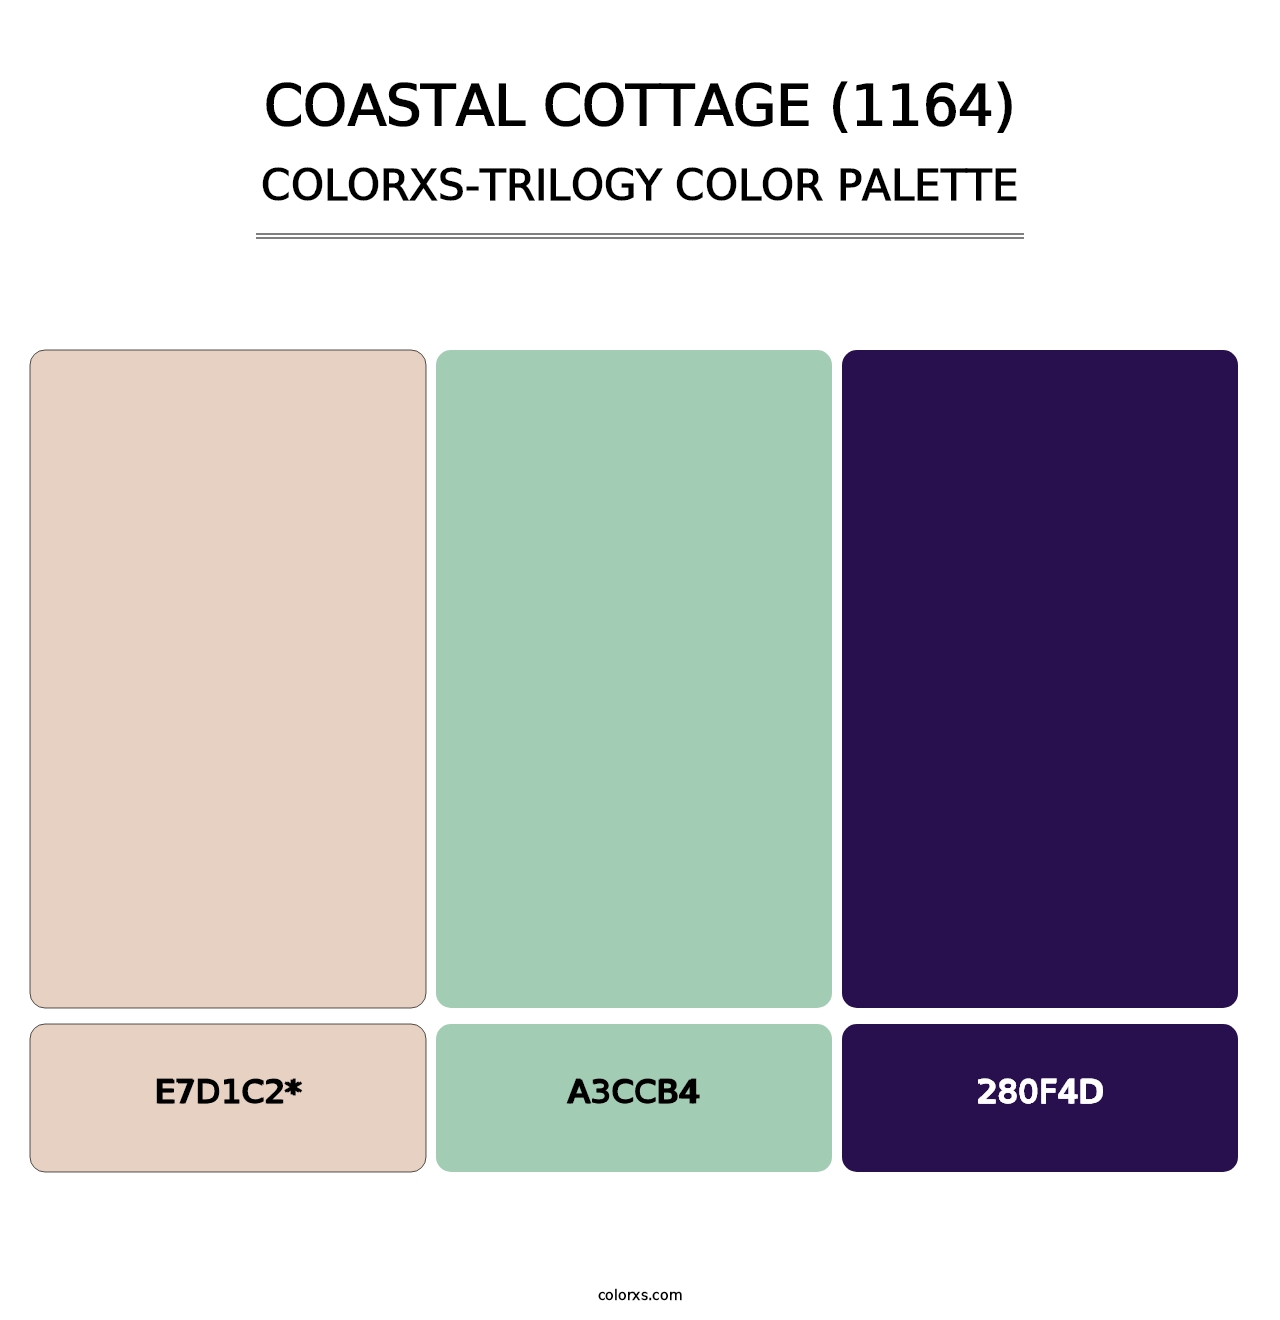 Coastal Cottage (1164) - Colorxs Trilogy Palette